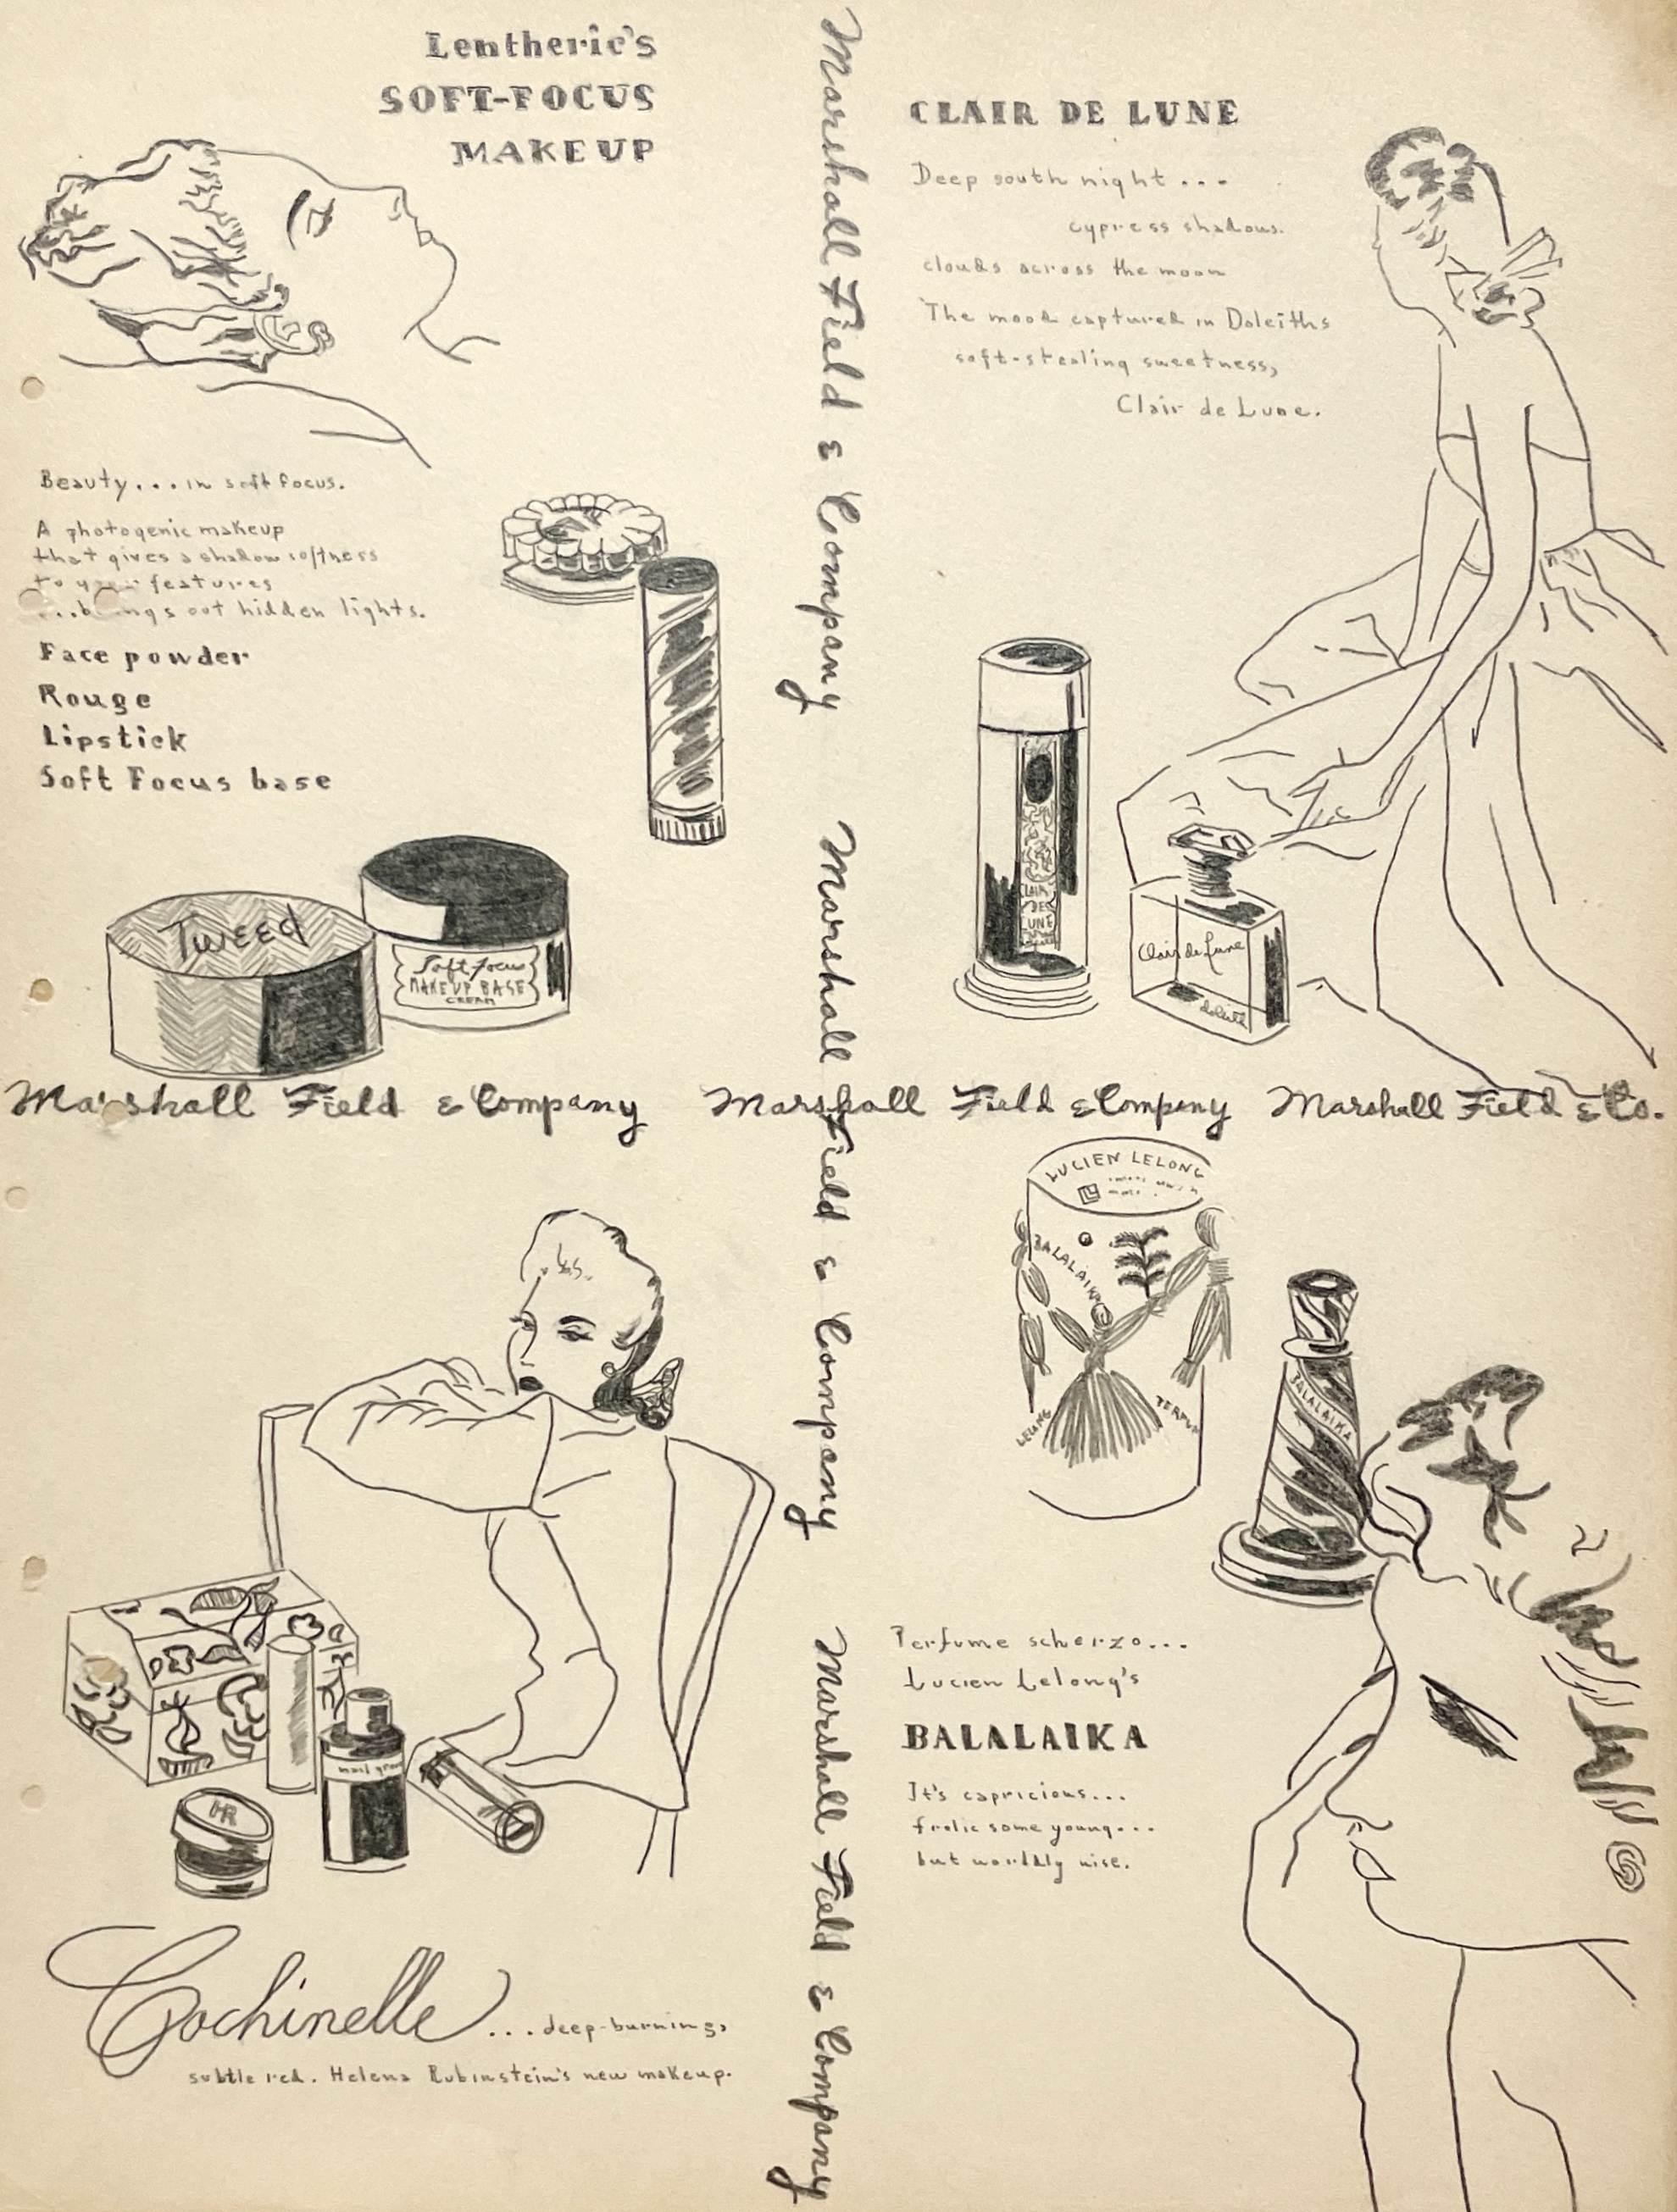 Unknown Figurative Art – Eine Modestudie/Werbung der frühen 1940er Jahre für Marshall Fields & Company